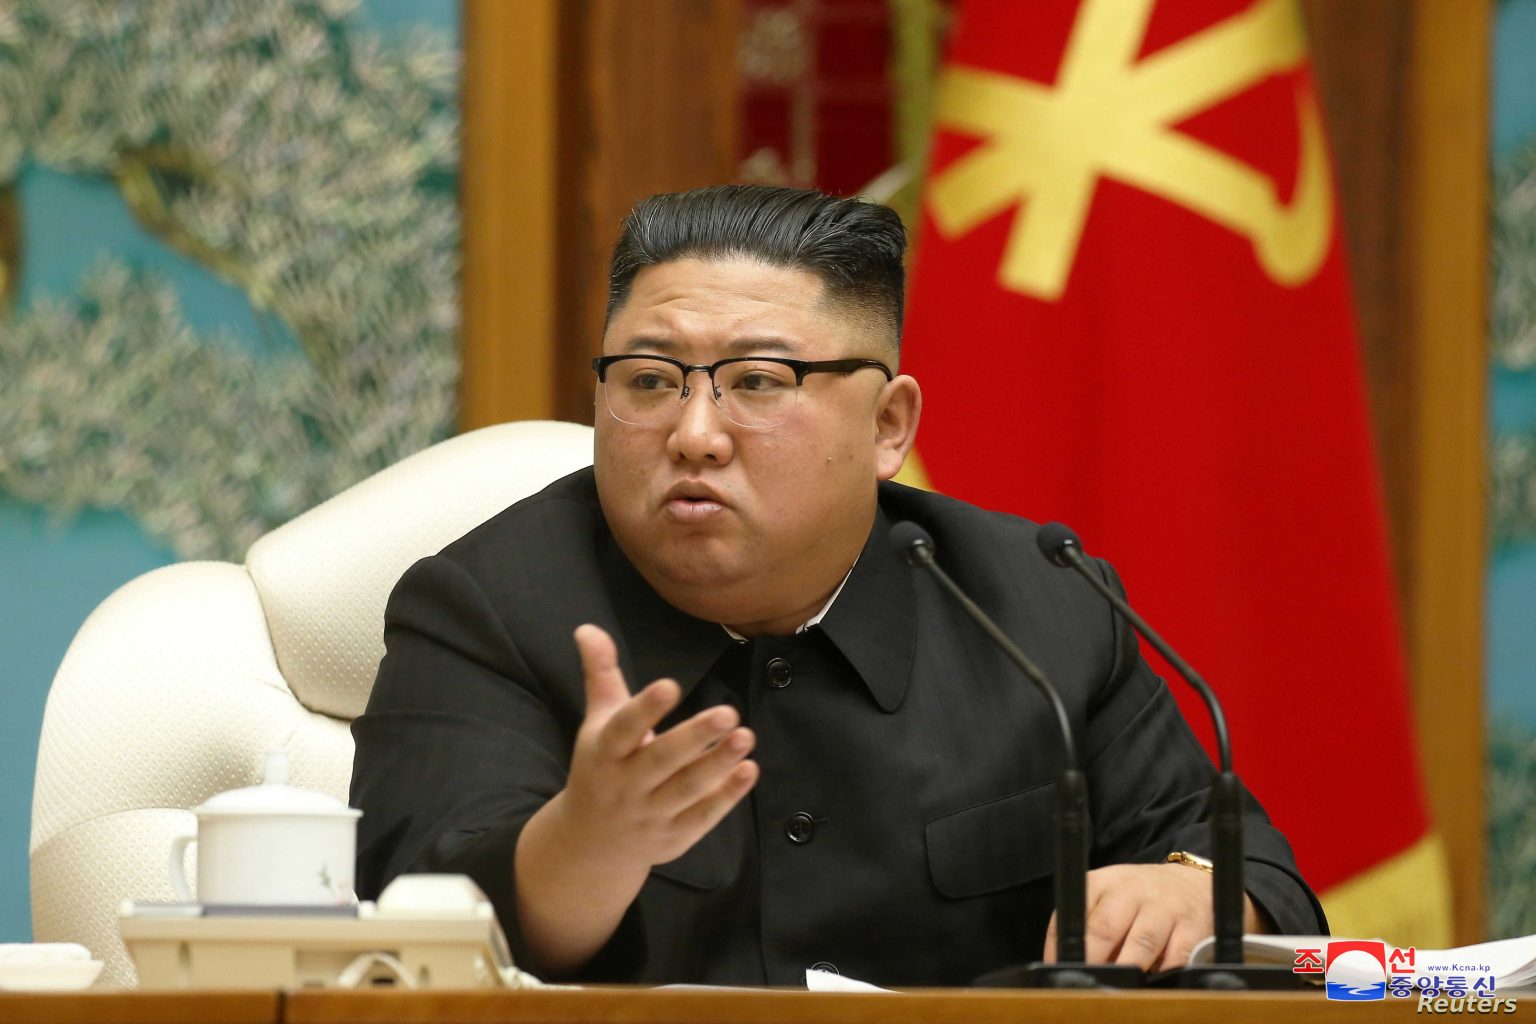 زعيم كوريا الشمالية: سلوك الولايات المتحدة والقوى الأخرى يجعل الصراع النووي وشيكا